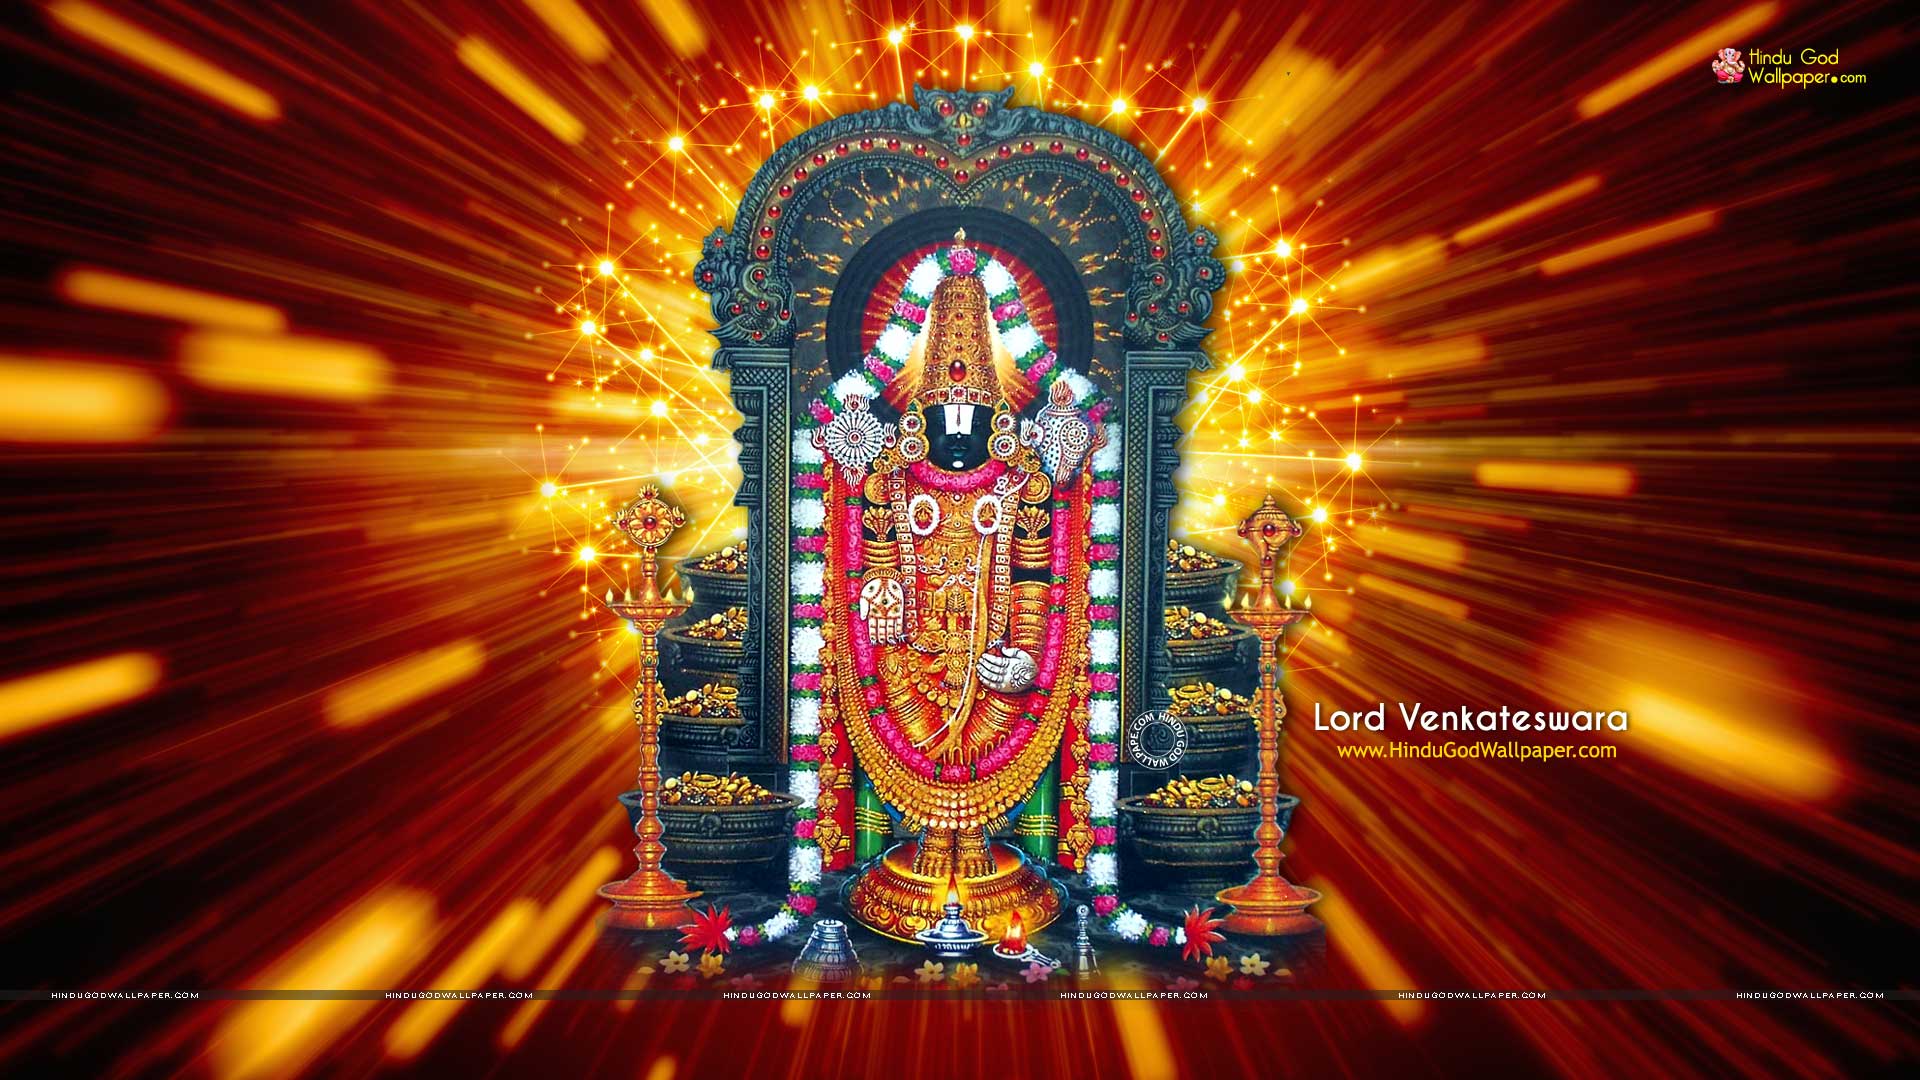 1080p Lord Venkateswara HD Wallpapers Free Download